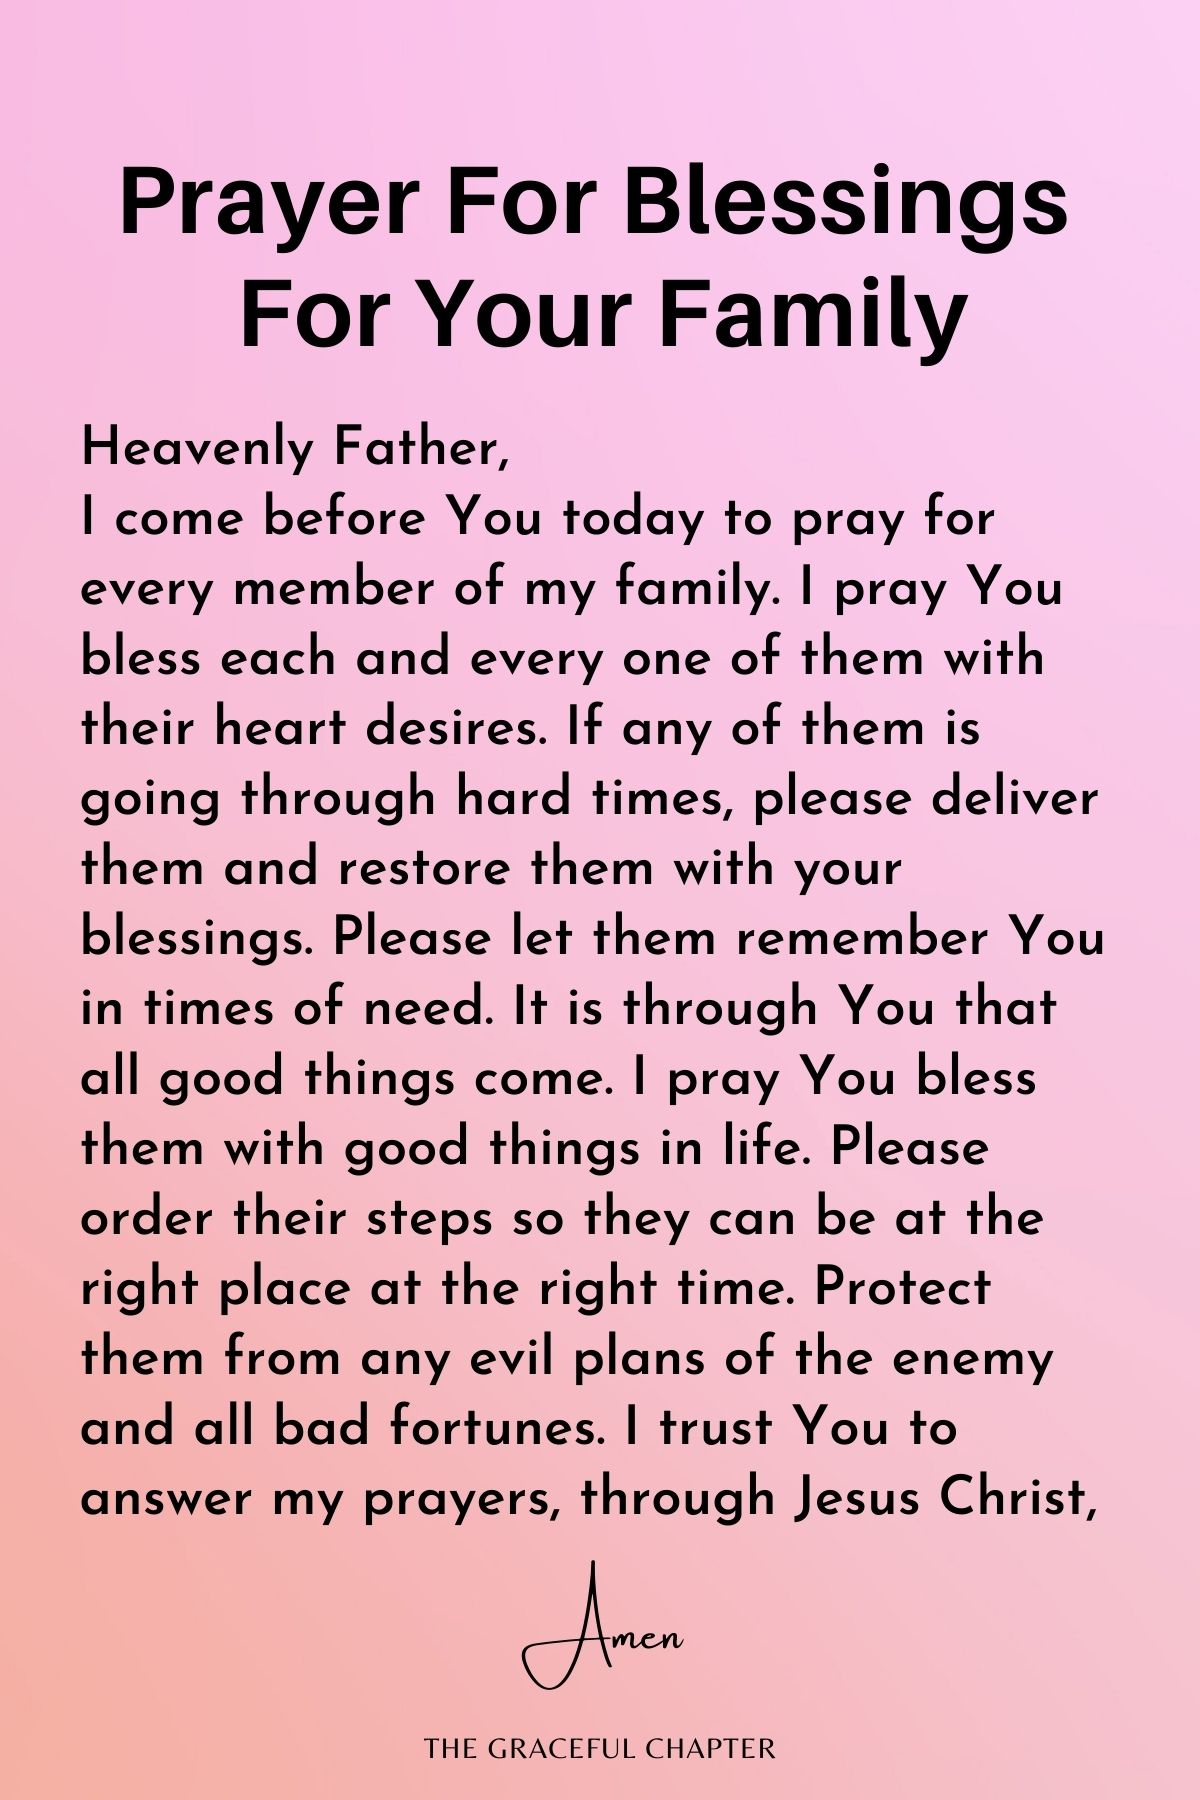 Prayer for blessings for your family